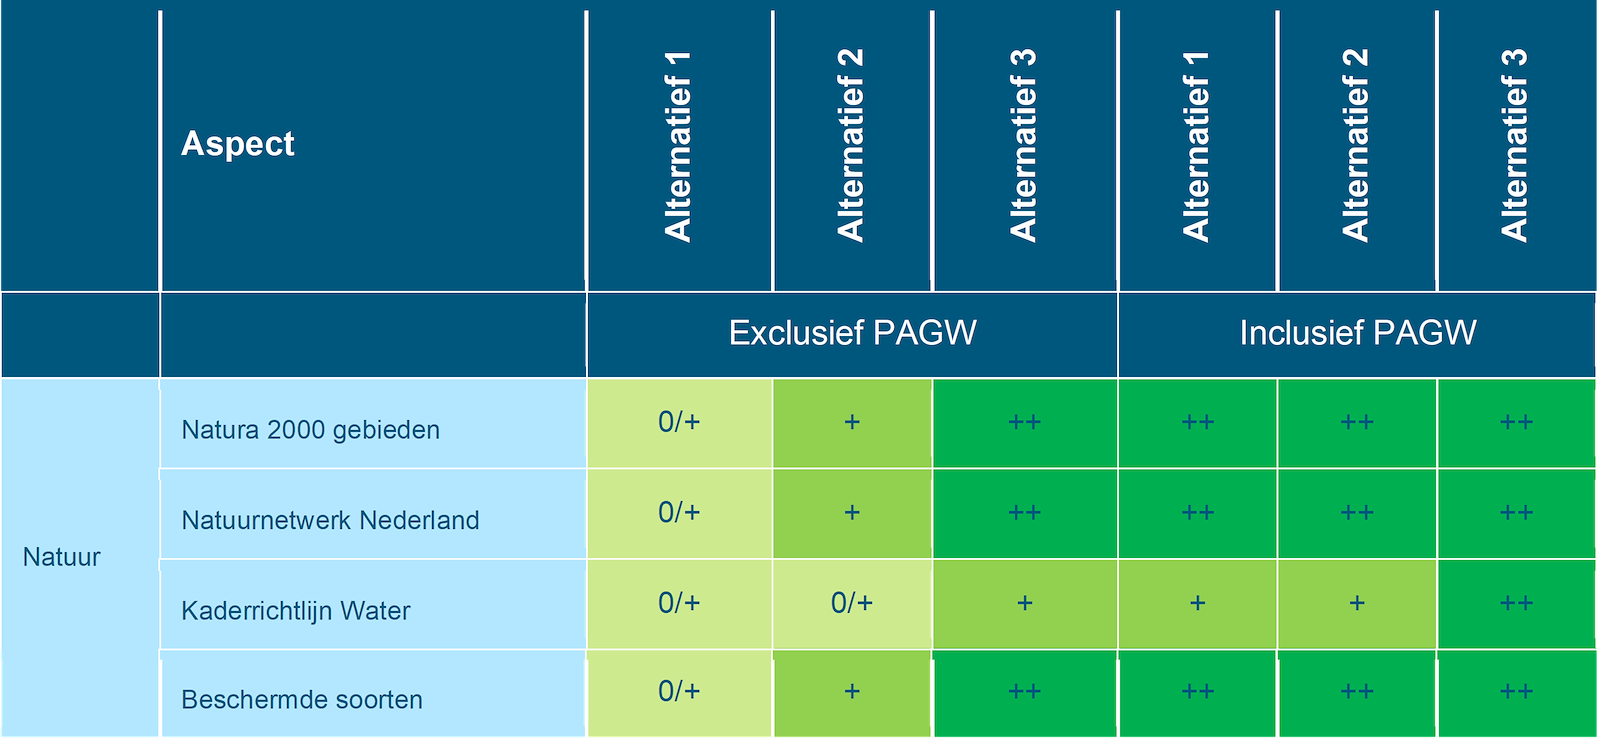 Deze tabel laat de totaalbeoordeling voor de milieueffecten van het beoordelingsaspect natuur zien voor de Maas, exclusief en inclusief PAGW, voor de drie alternatieven. Deze beoordeling is toegelicht in de tekst voorafgaande aan de tabel.